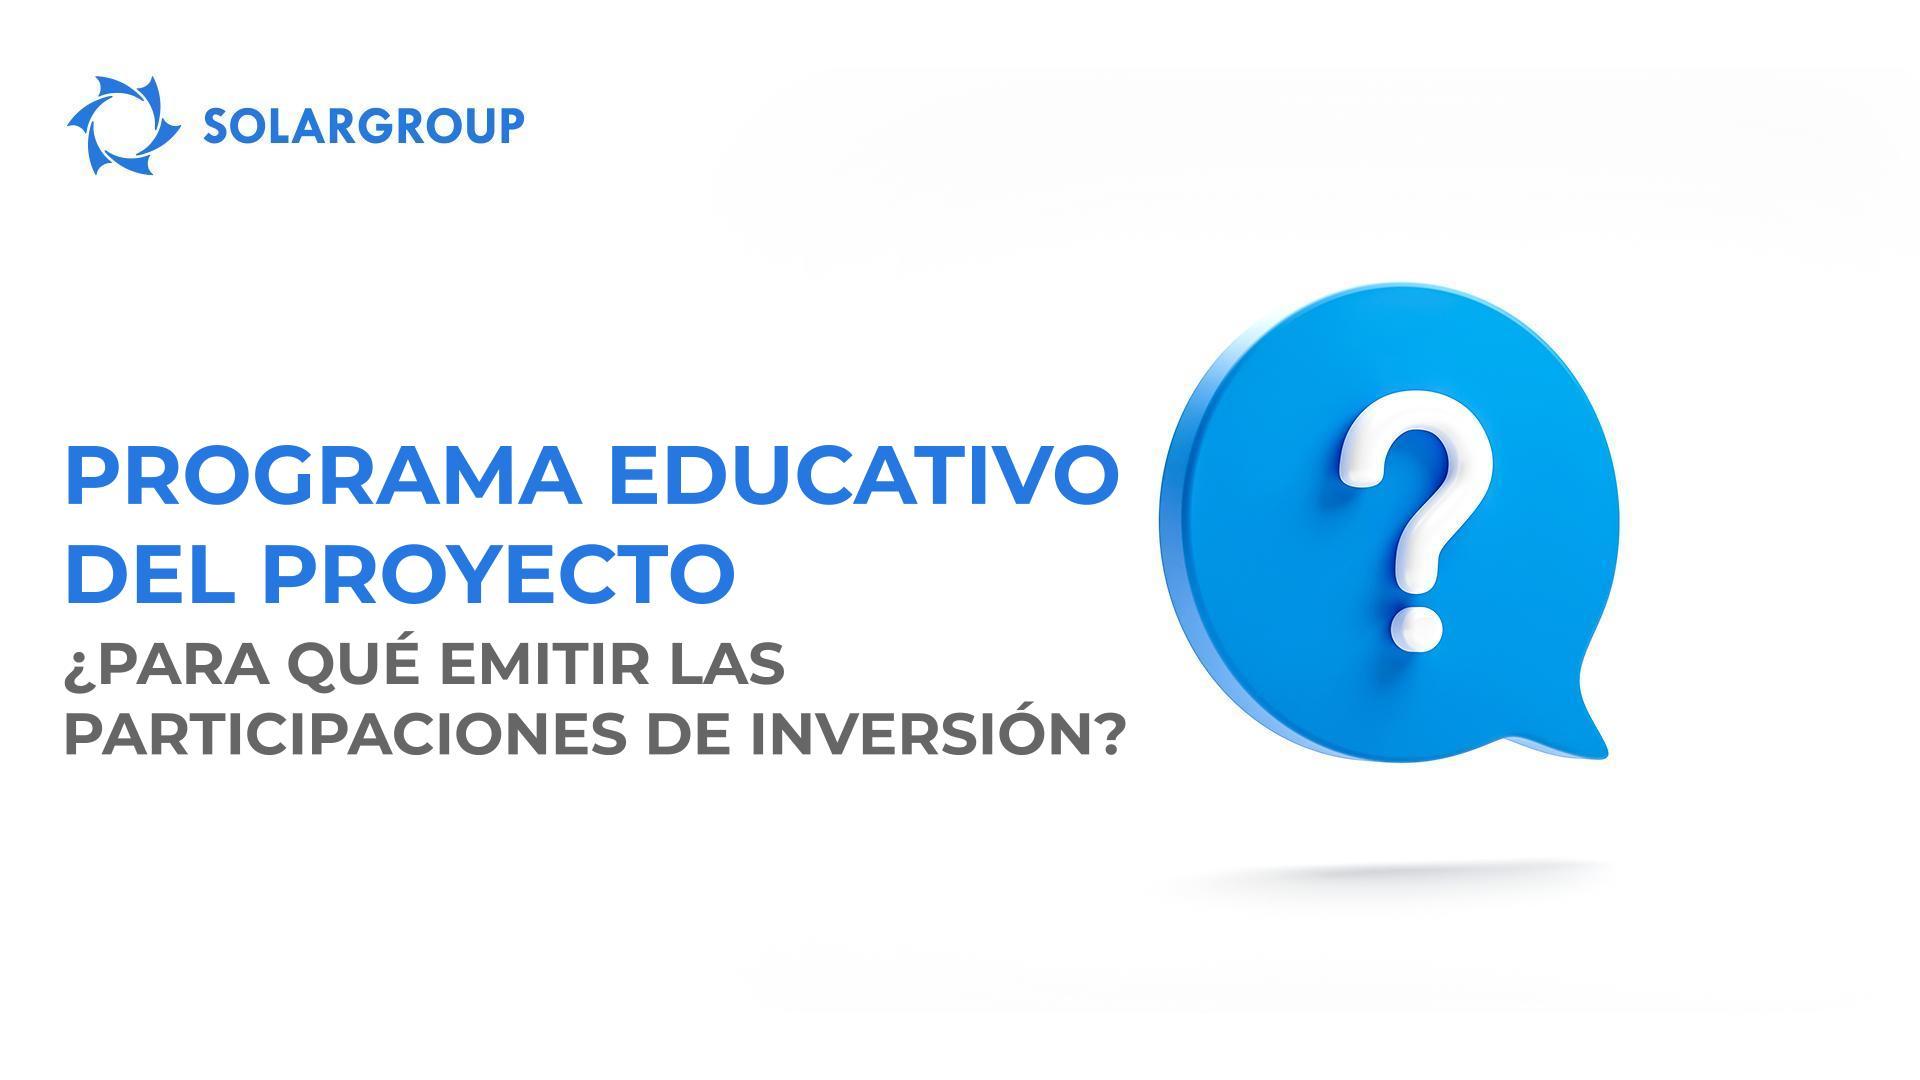 Programa educativo del proyecto: ¿para qué emitir participaciones de inversión?